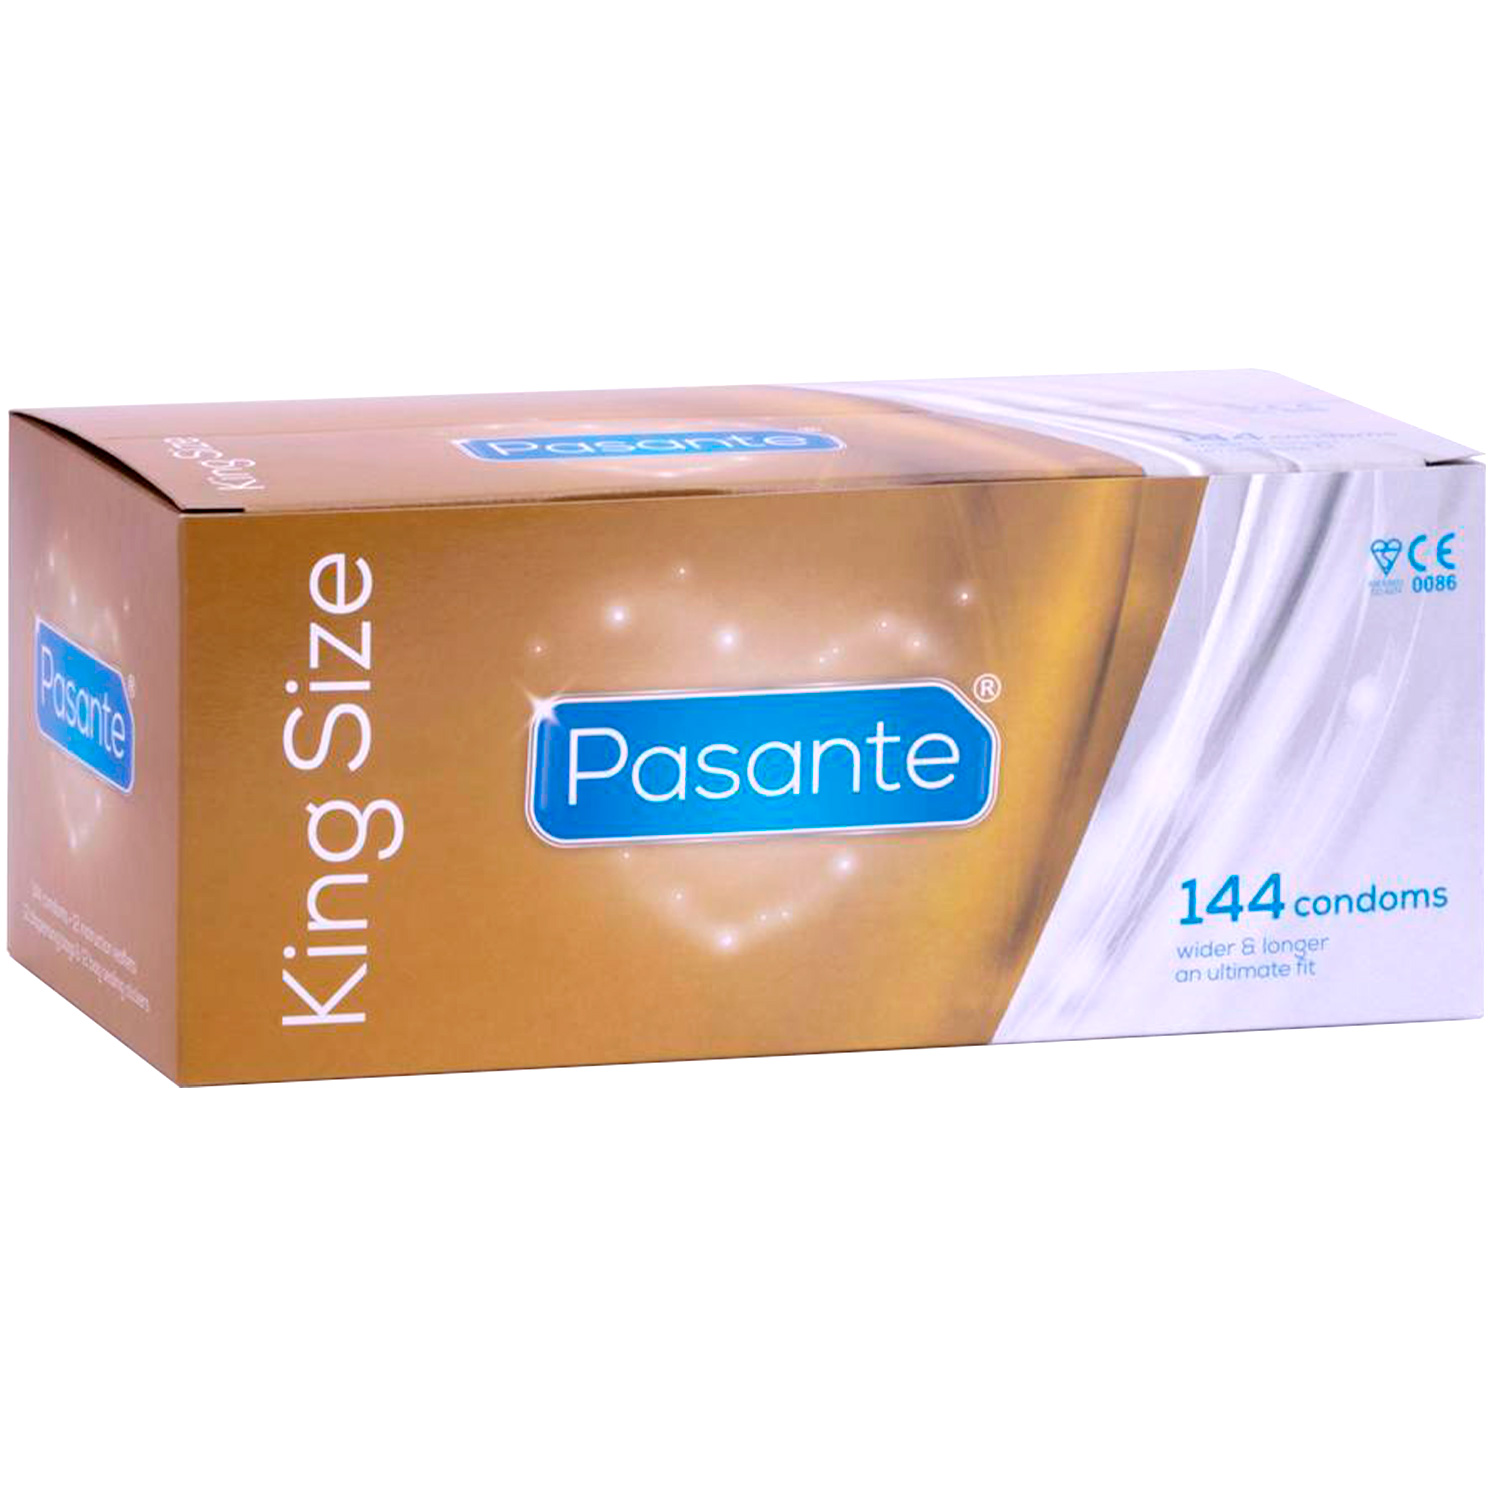 Pasante King Size Kondomer 144 st. - Pasante